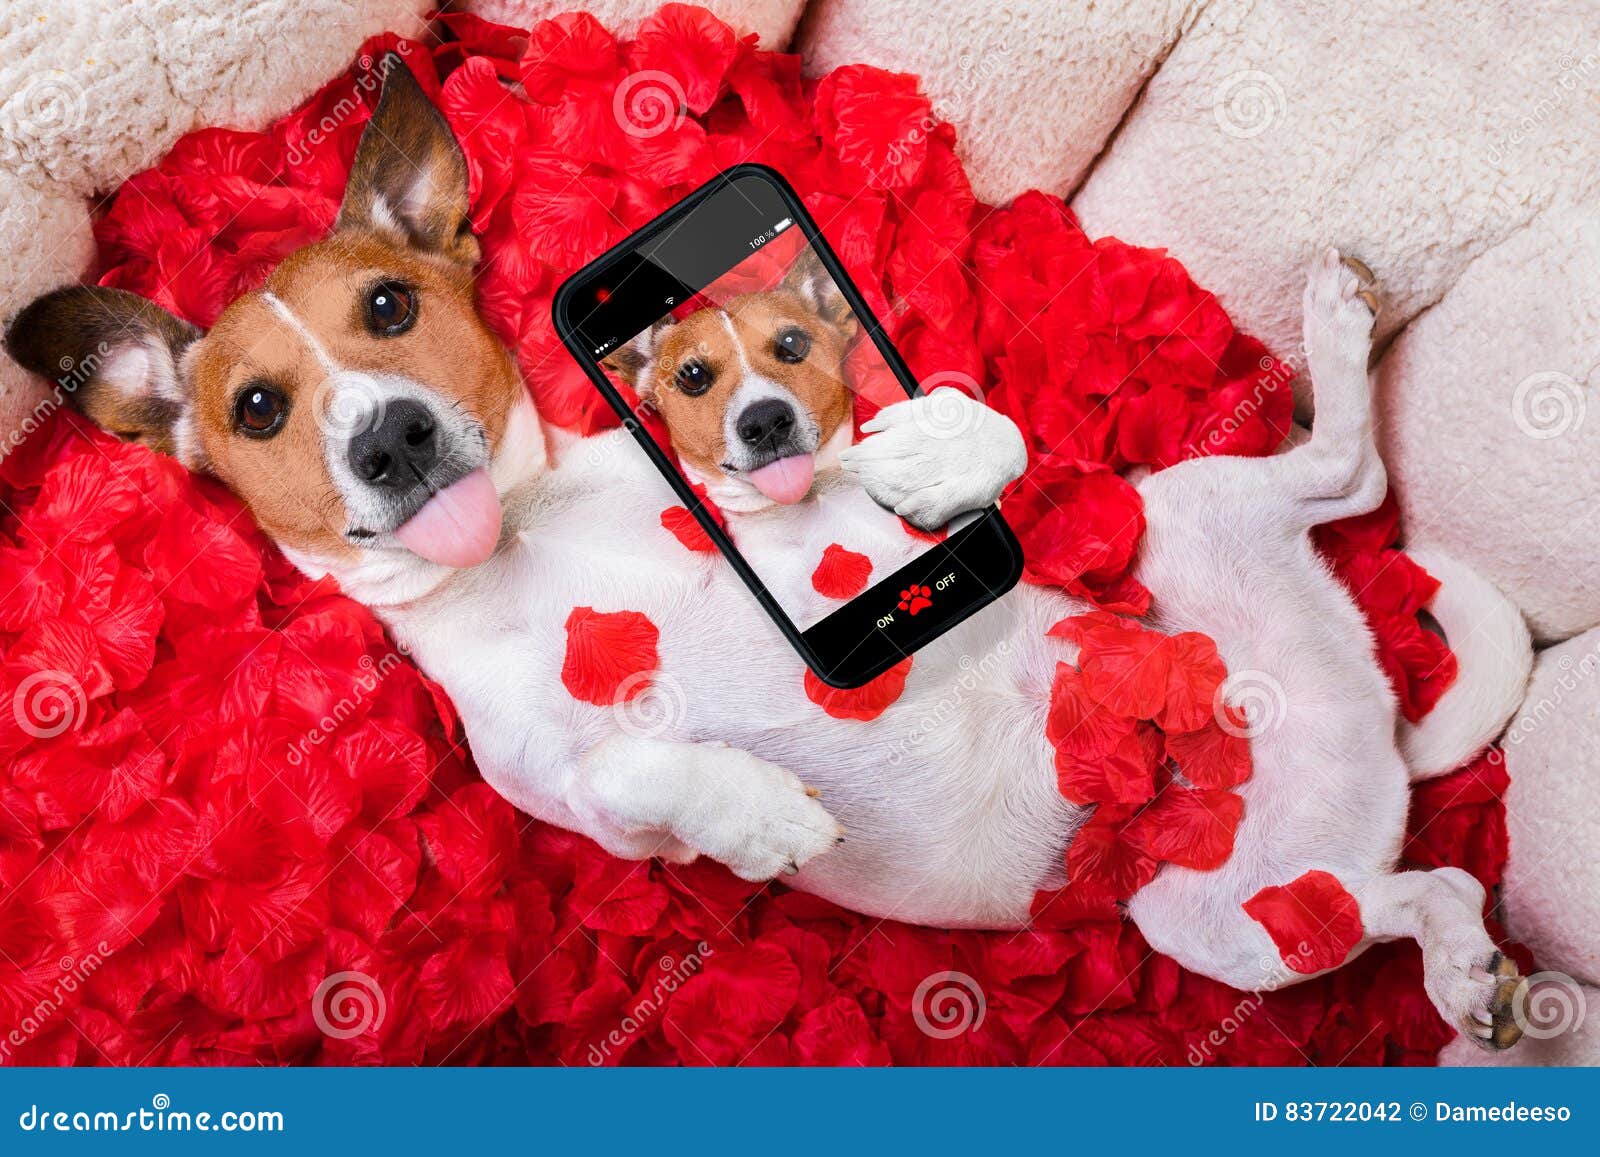 下载壁纸 拉布拉多, 狗, 小狗, 花卉 免费为您的桌面分辨率的壁纸 7340x4870 — 图片 №632259